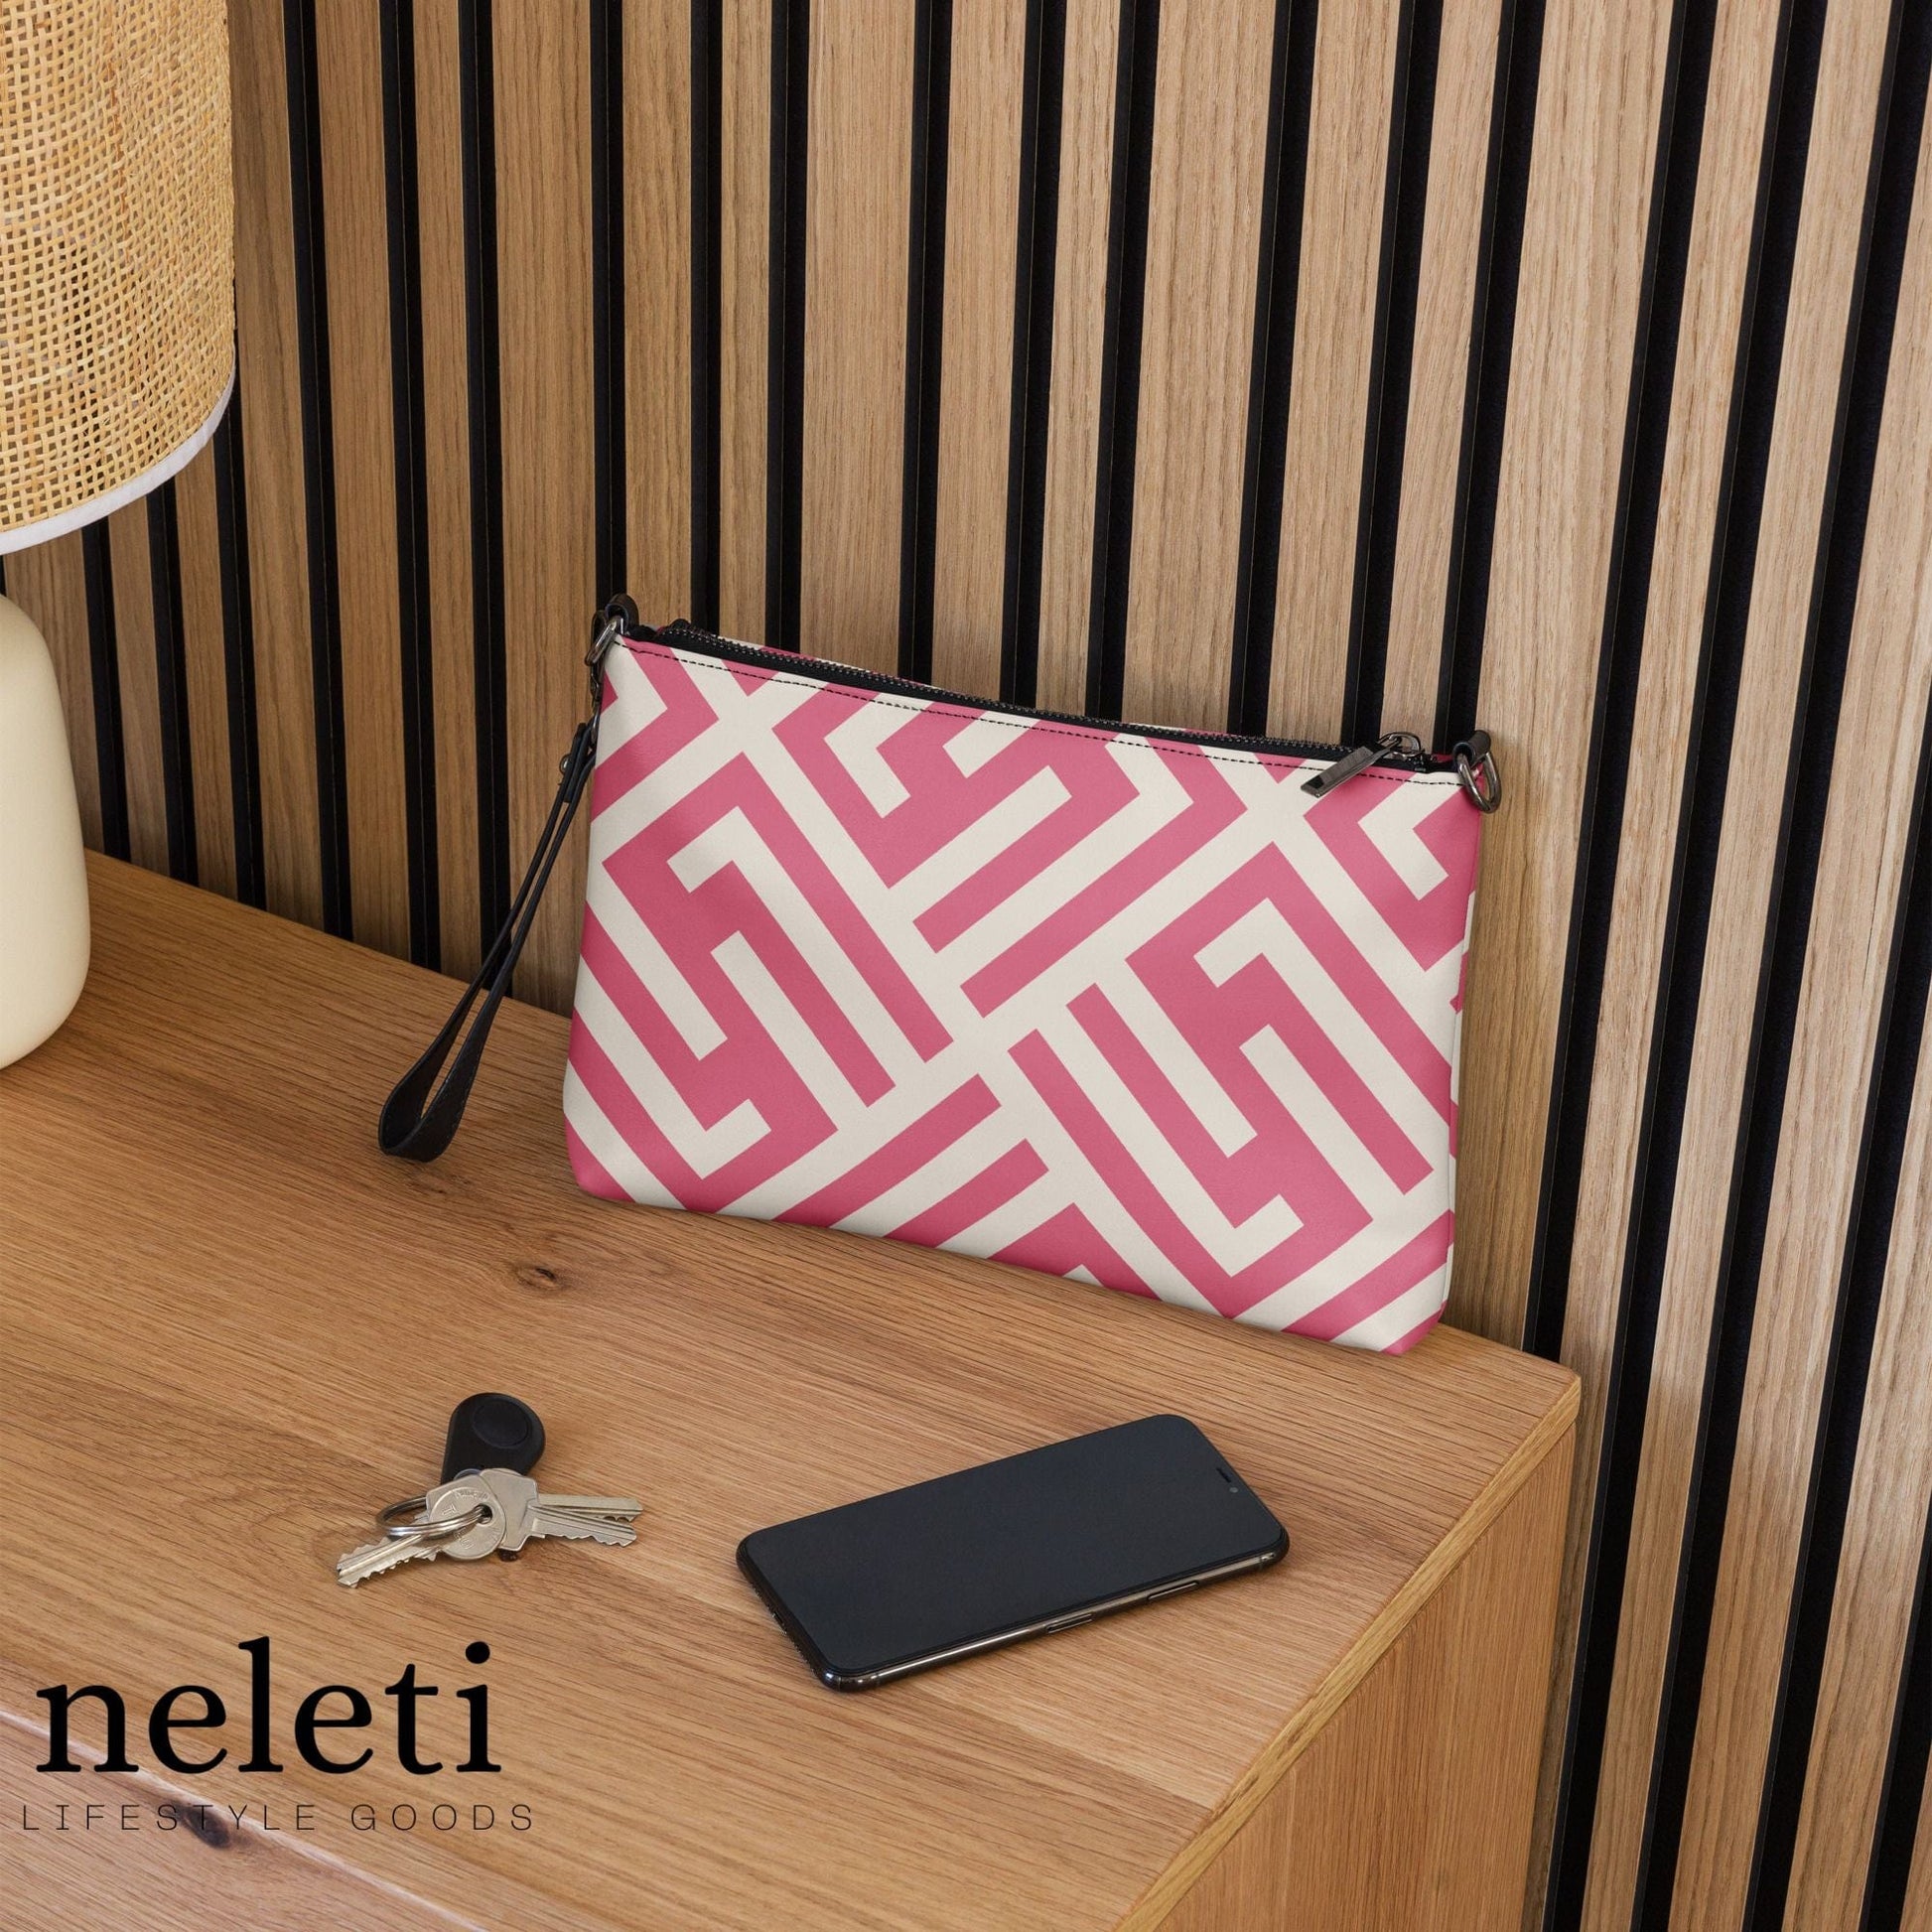 neleti.com-pink-crossbody-bag